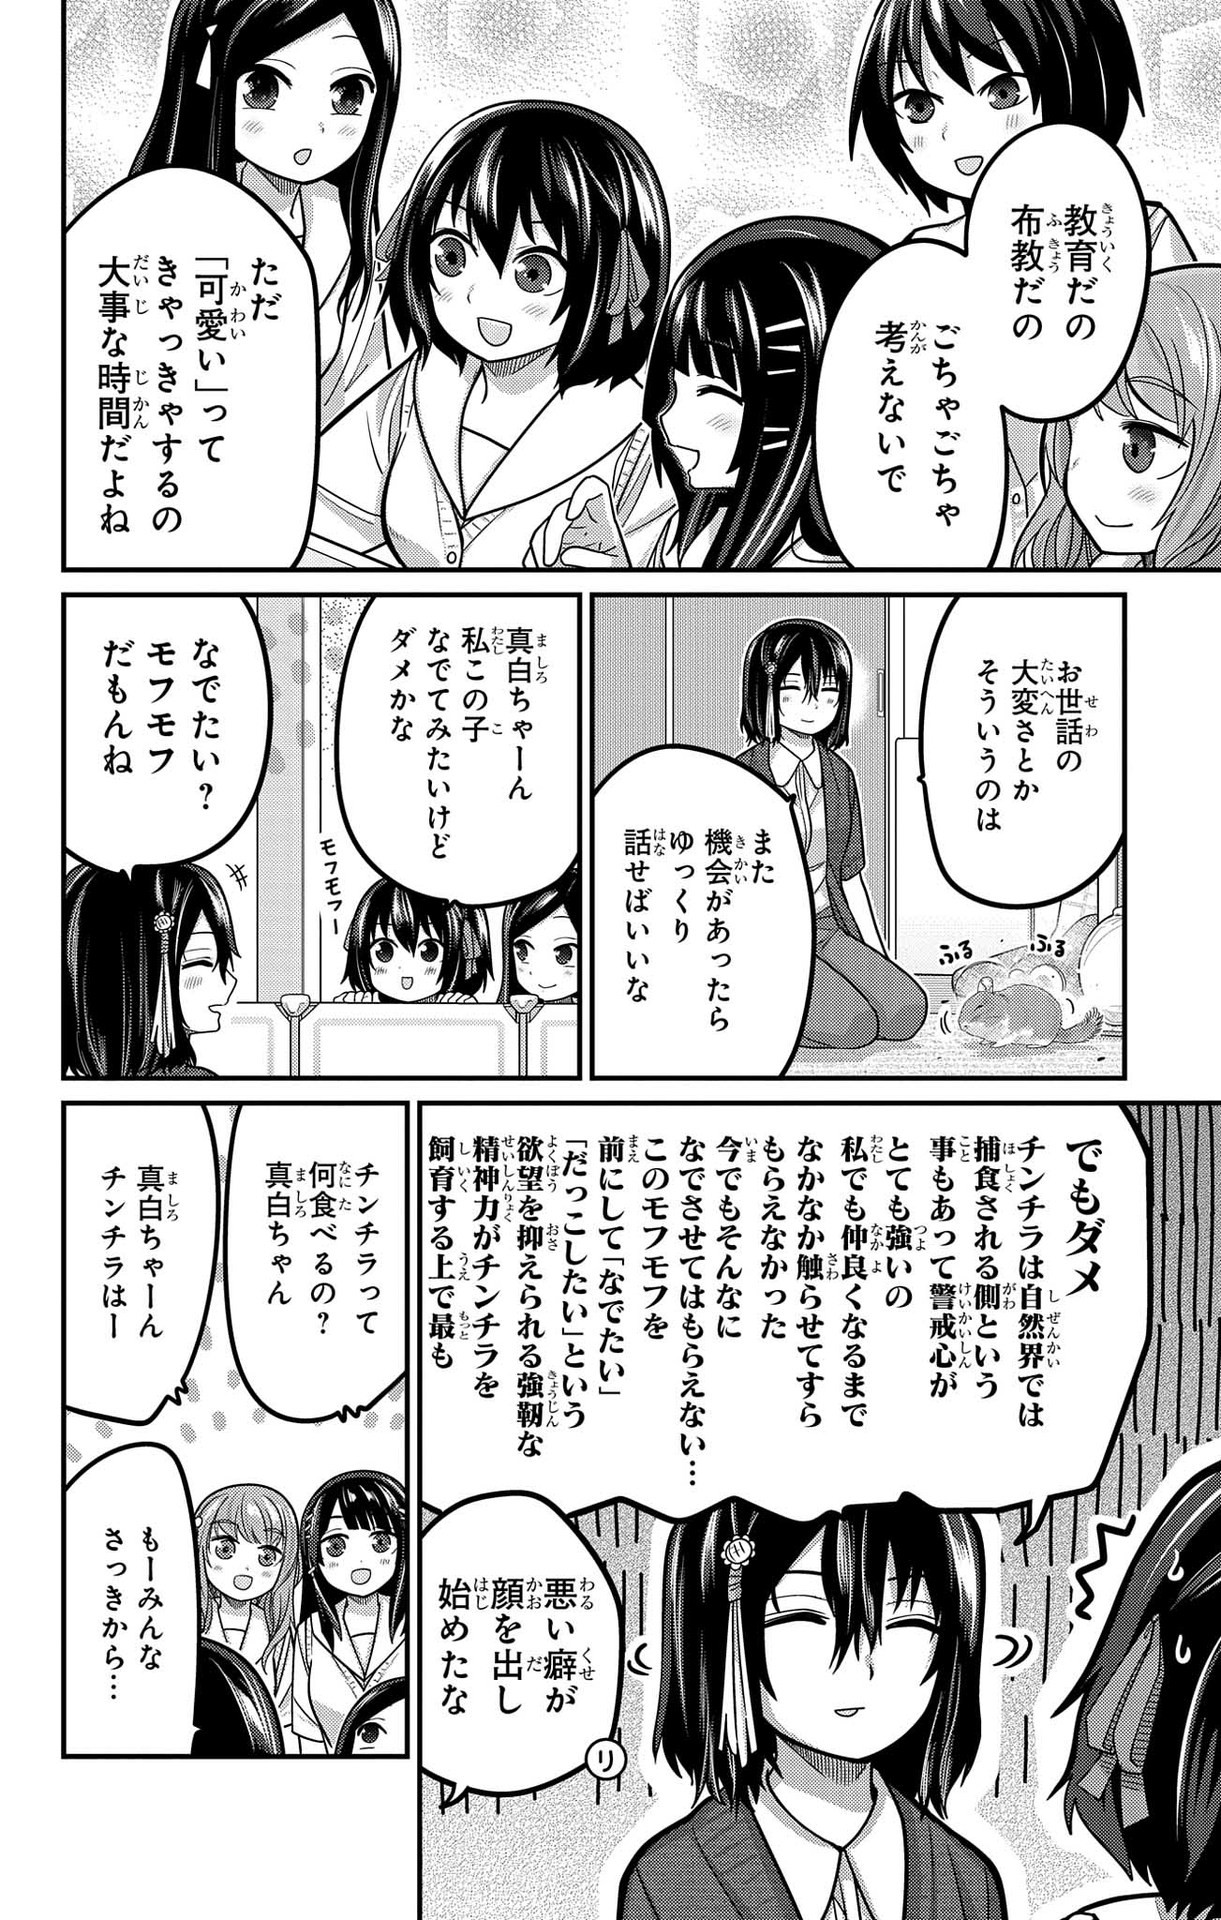 Kawaisugi Crisis - Chapter 94 - Page 14